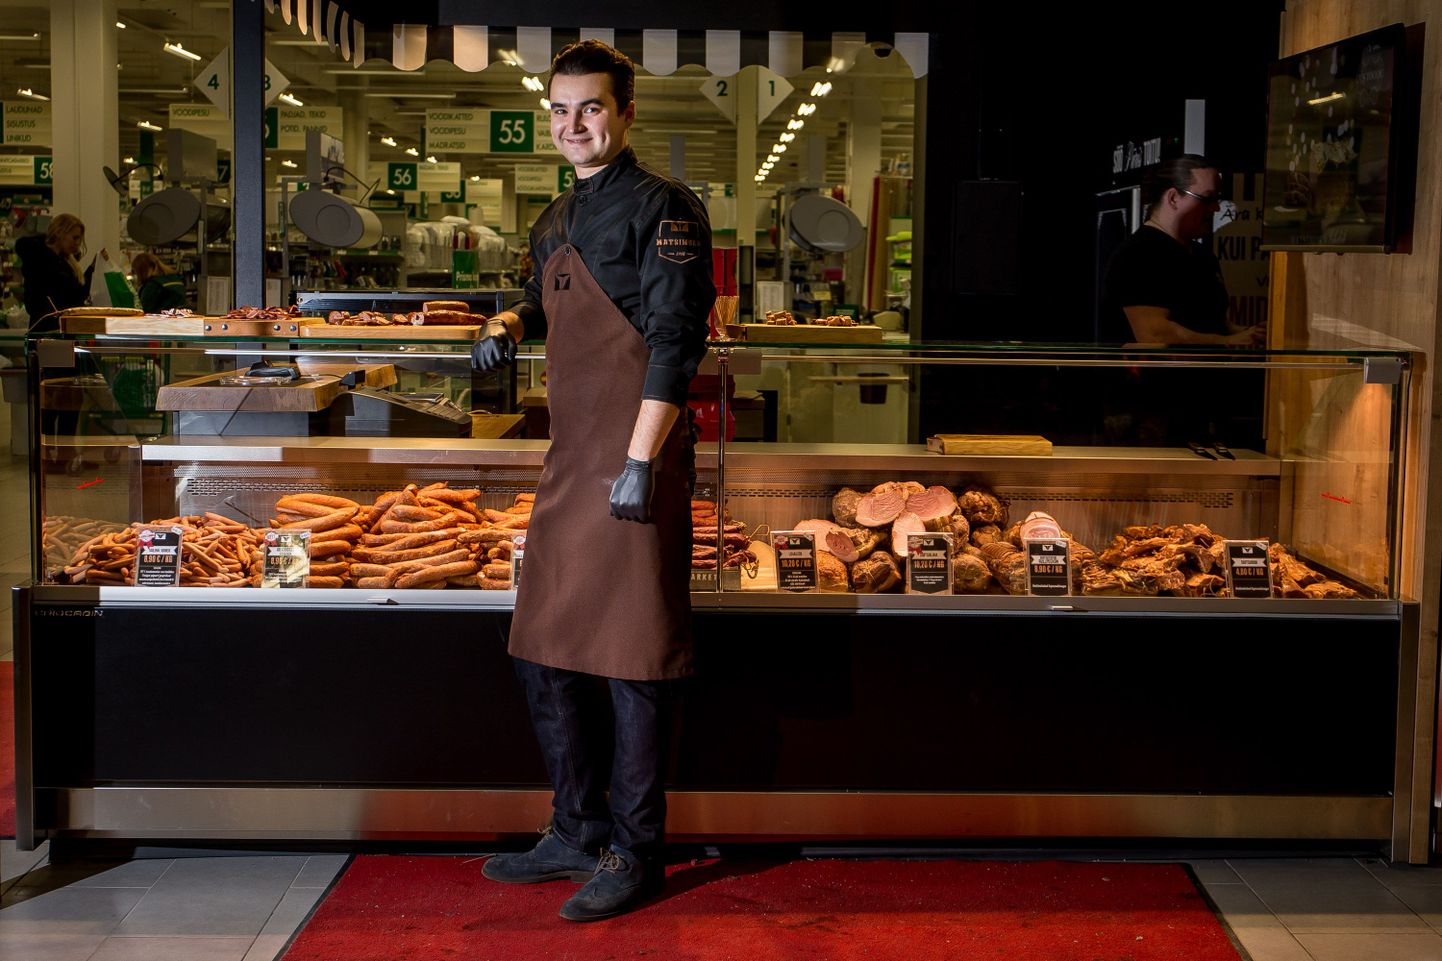 Новая мясная лавка Matsimoka в торговом центре Rocca al mare. Стен Инно уверяет, что копченое мясо и колбасы сделаны только из мяса.